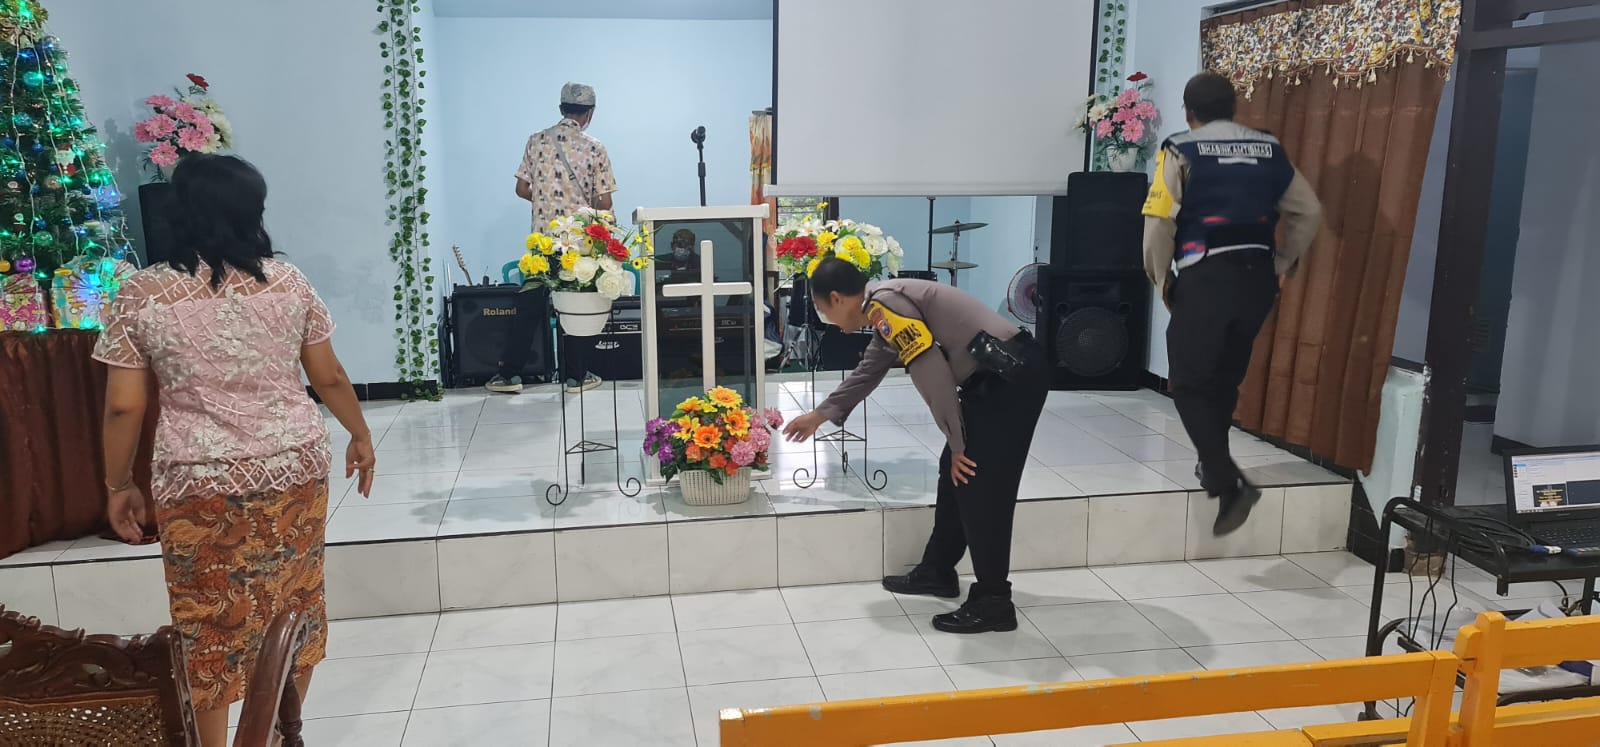 Antisipasi Gangguan Keamanan, Polsek Kertosono Siagakan Personil di Gereja